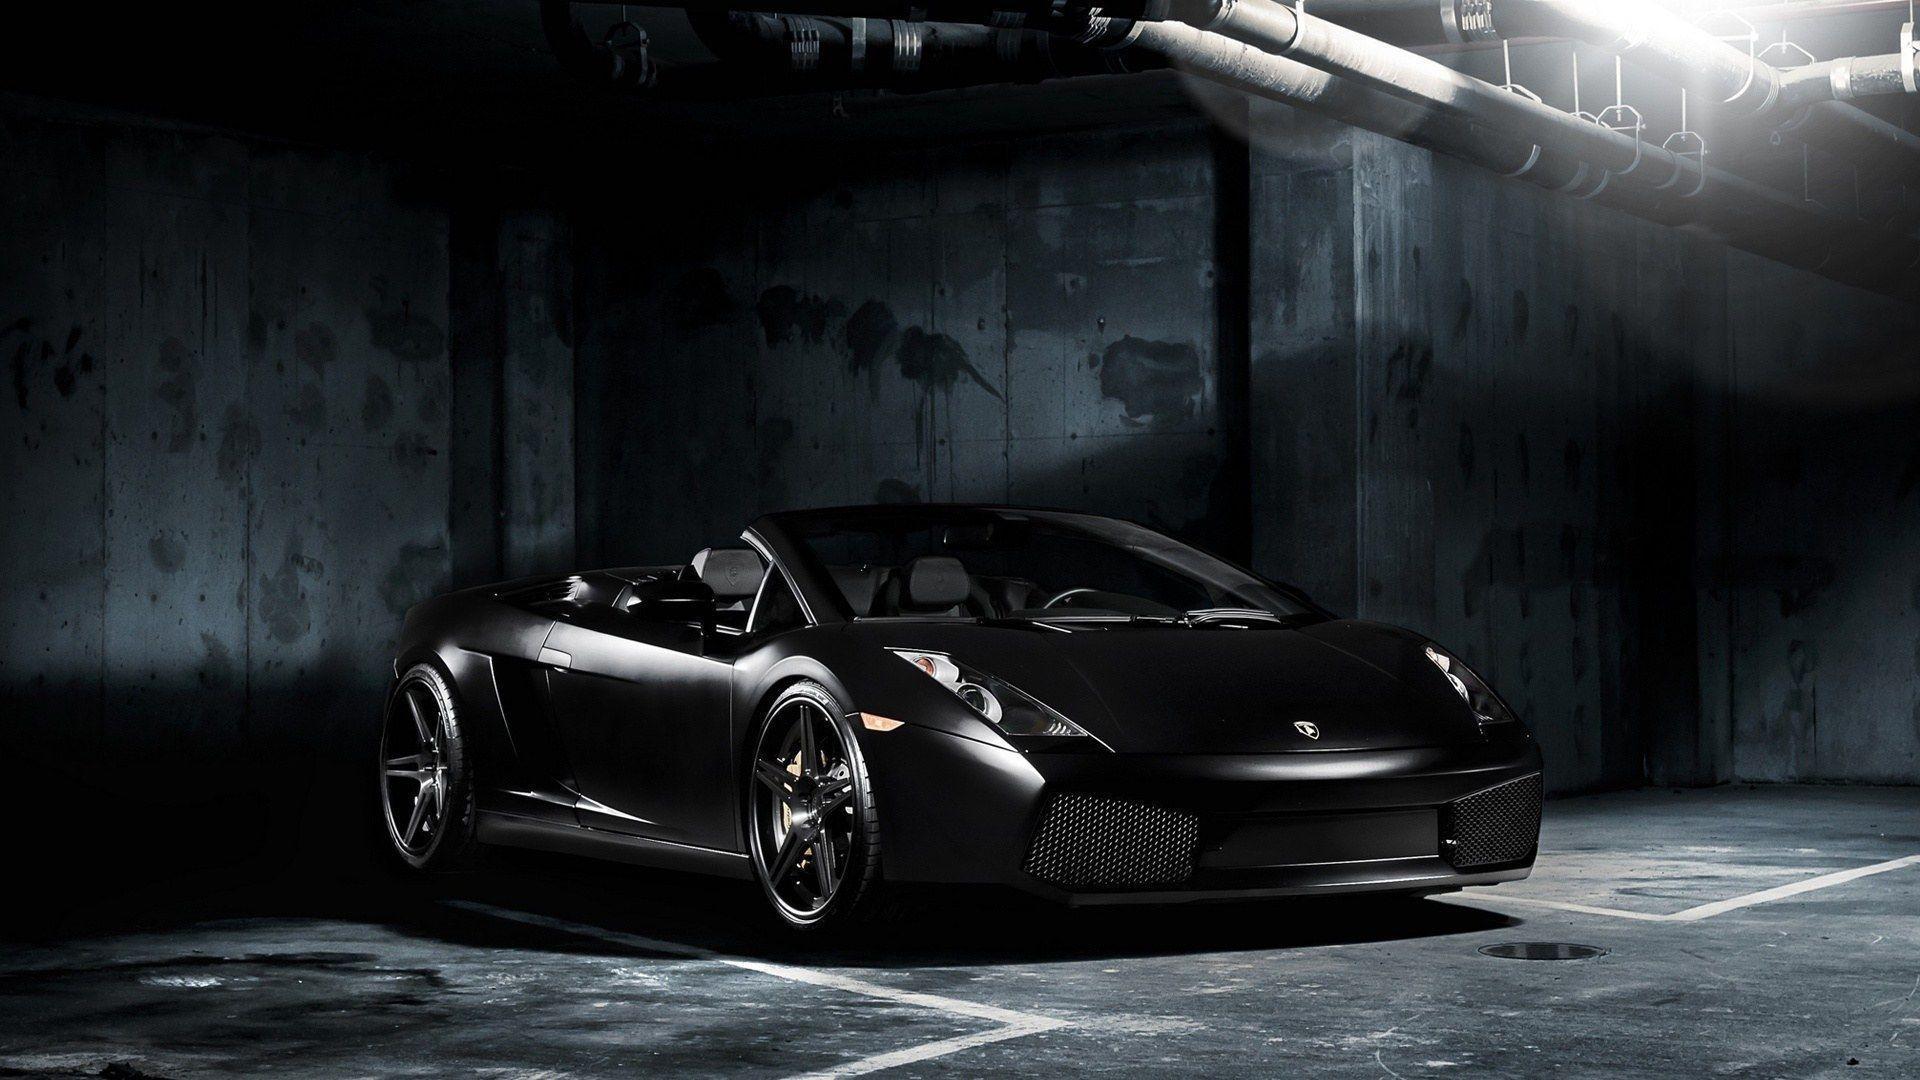 Black Lamborghini Gallardo Wallpaper Hd